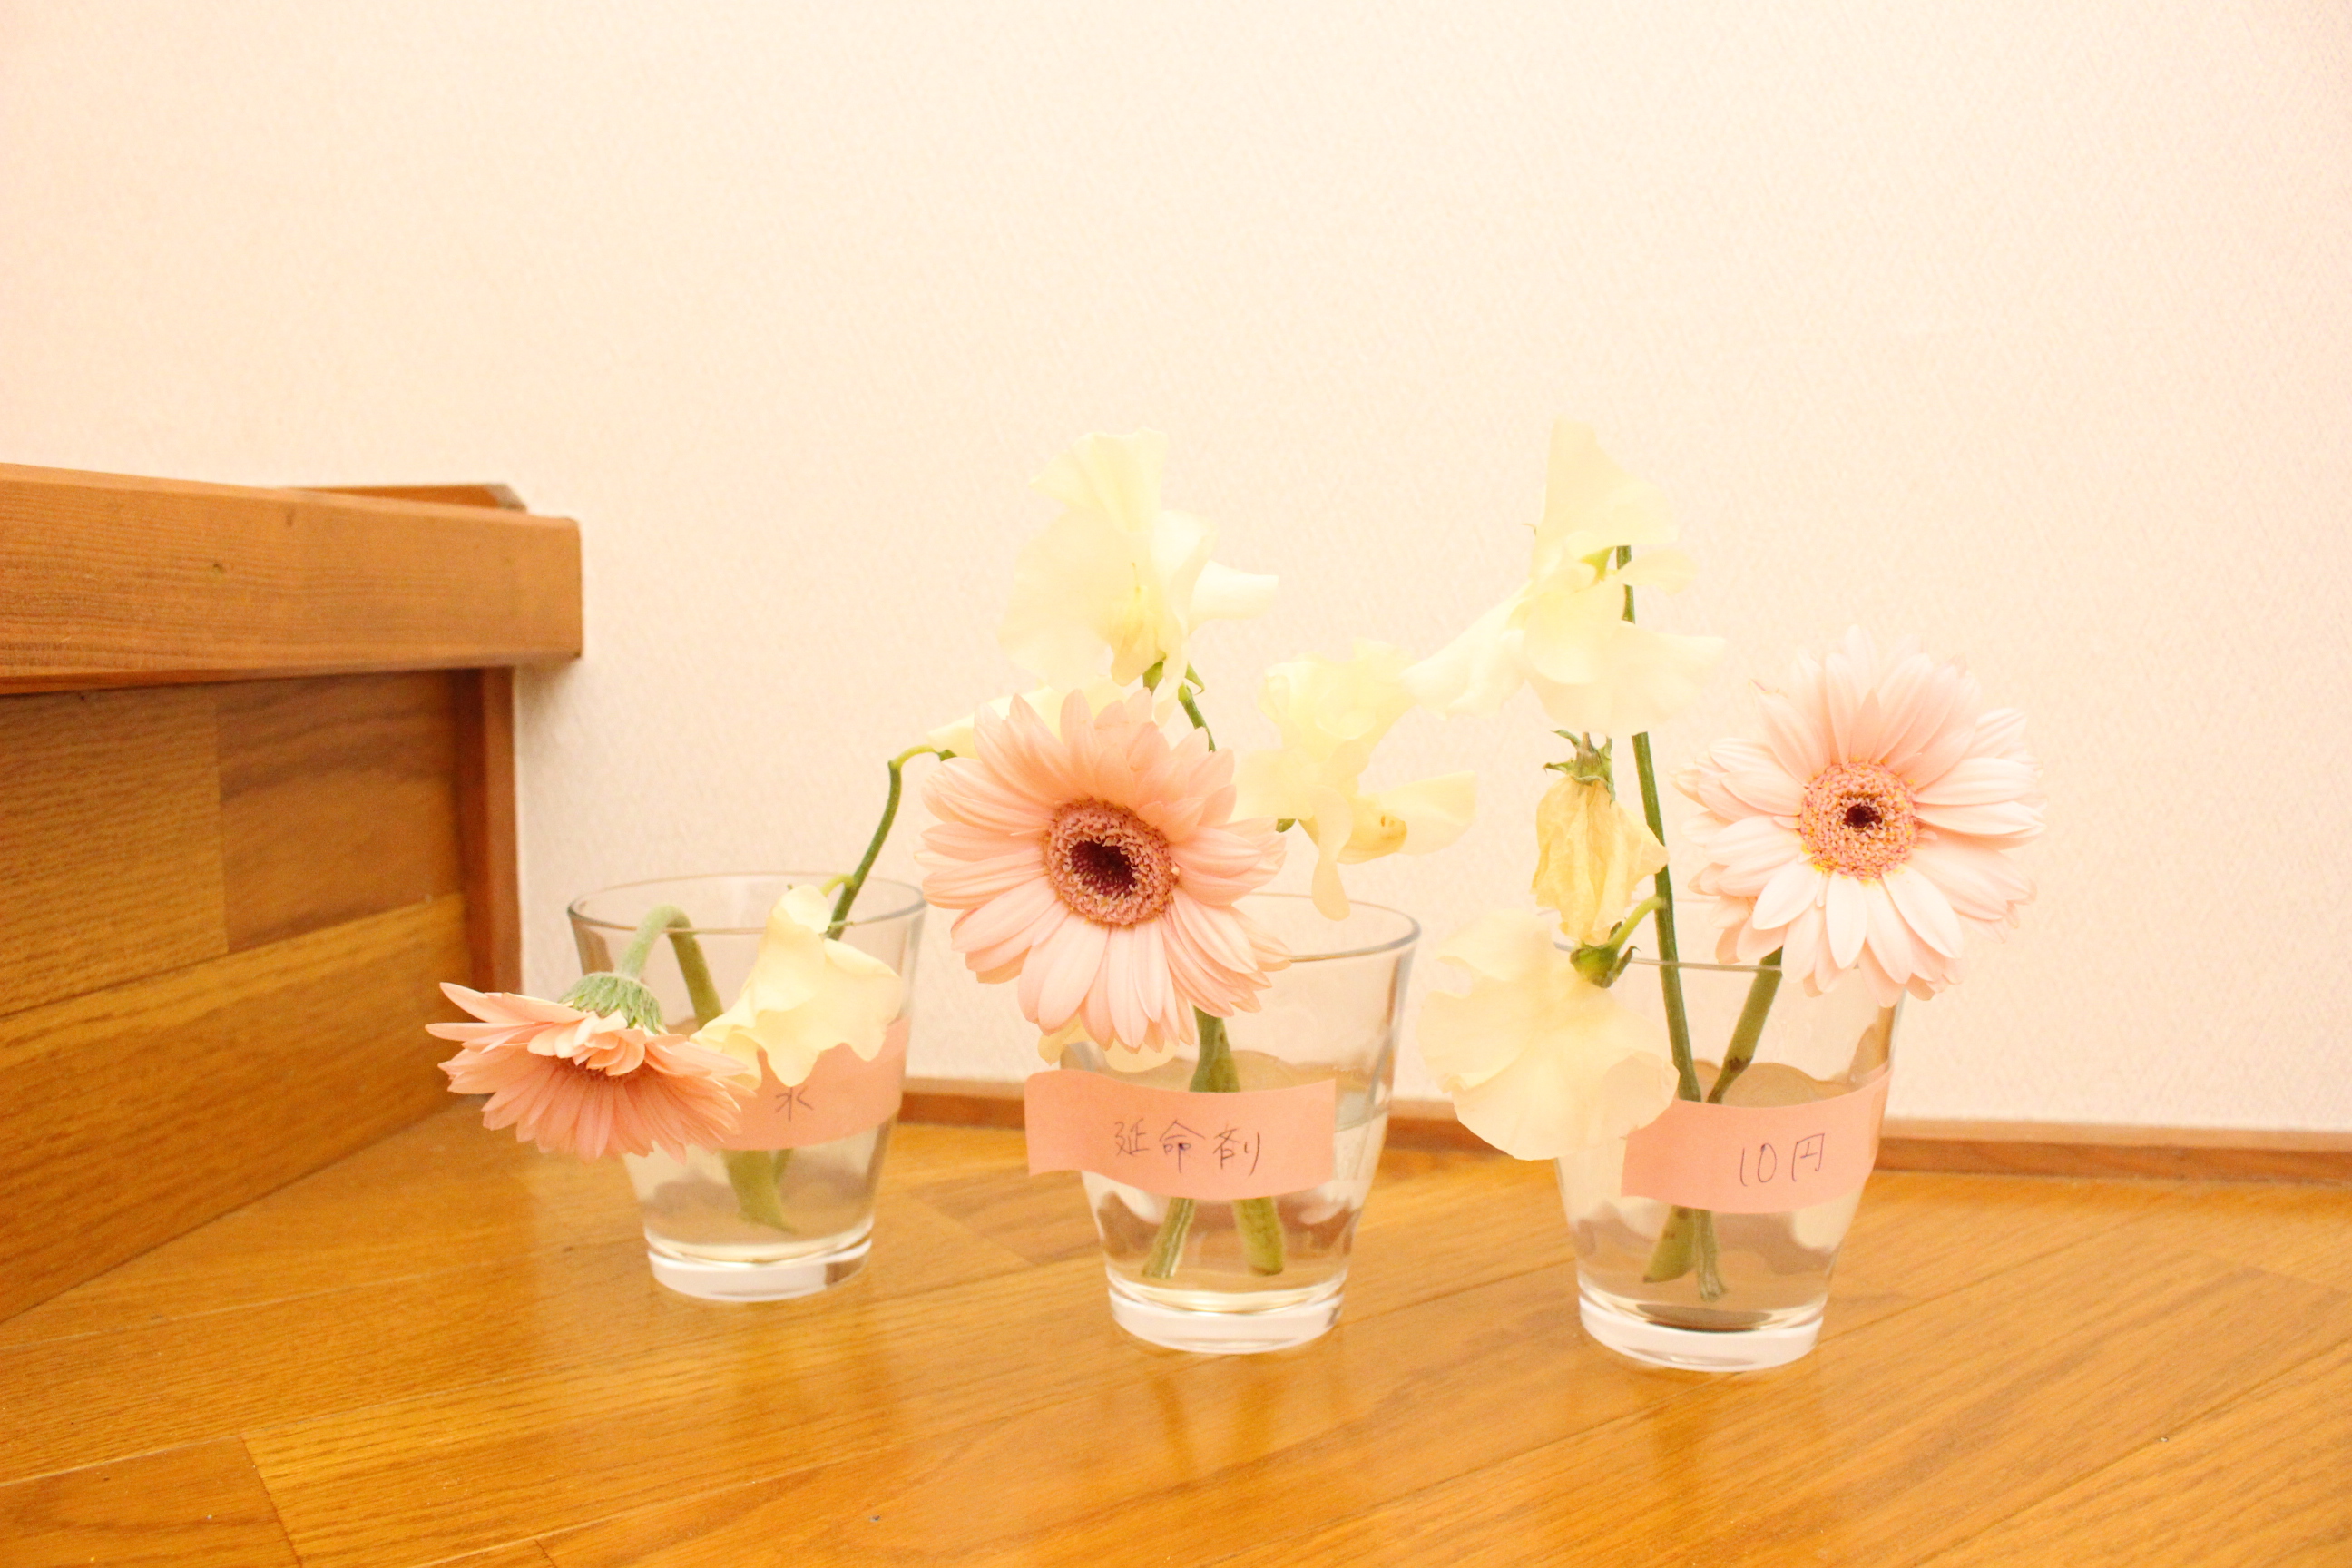 切り花を長持ちさせるという液体の薬 美咲 と10円玉を入れた花は本当に効き目はあるのか試してみた 造花 フェイクグリーンの配達とレンタル 神戸kaen カエン